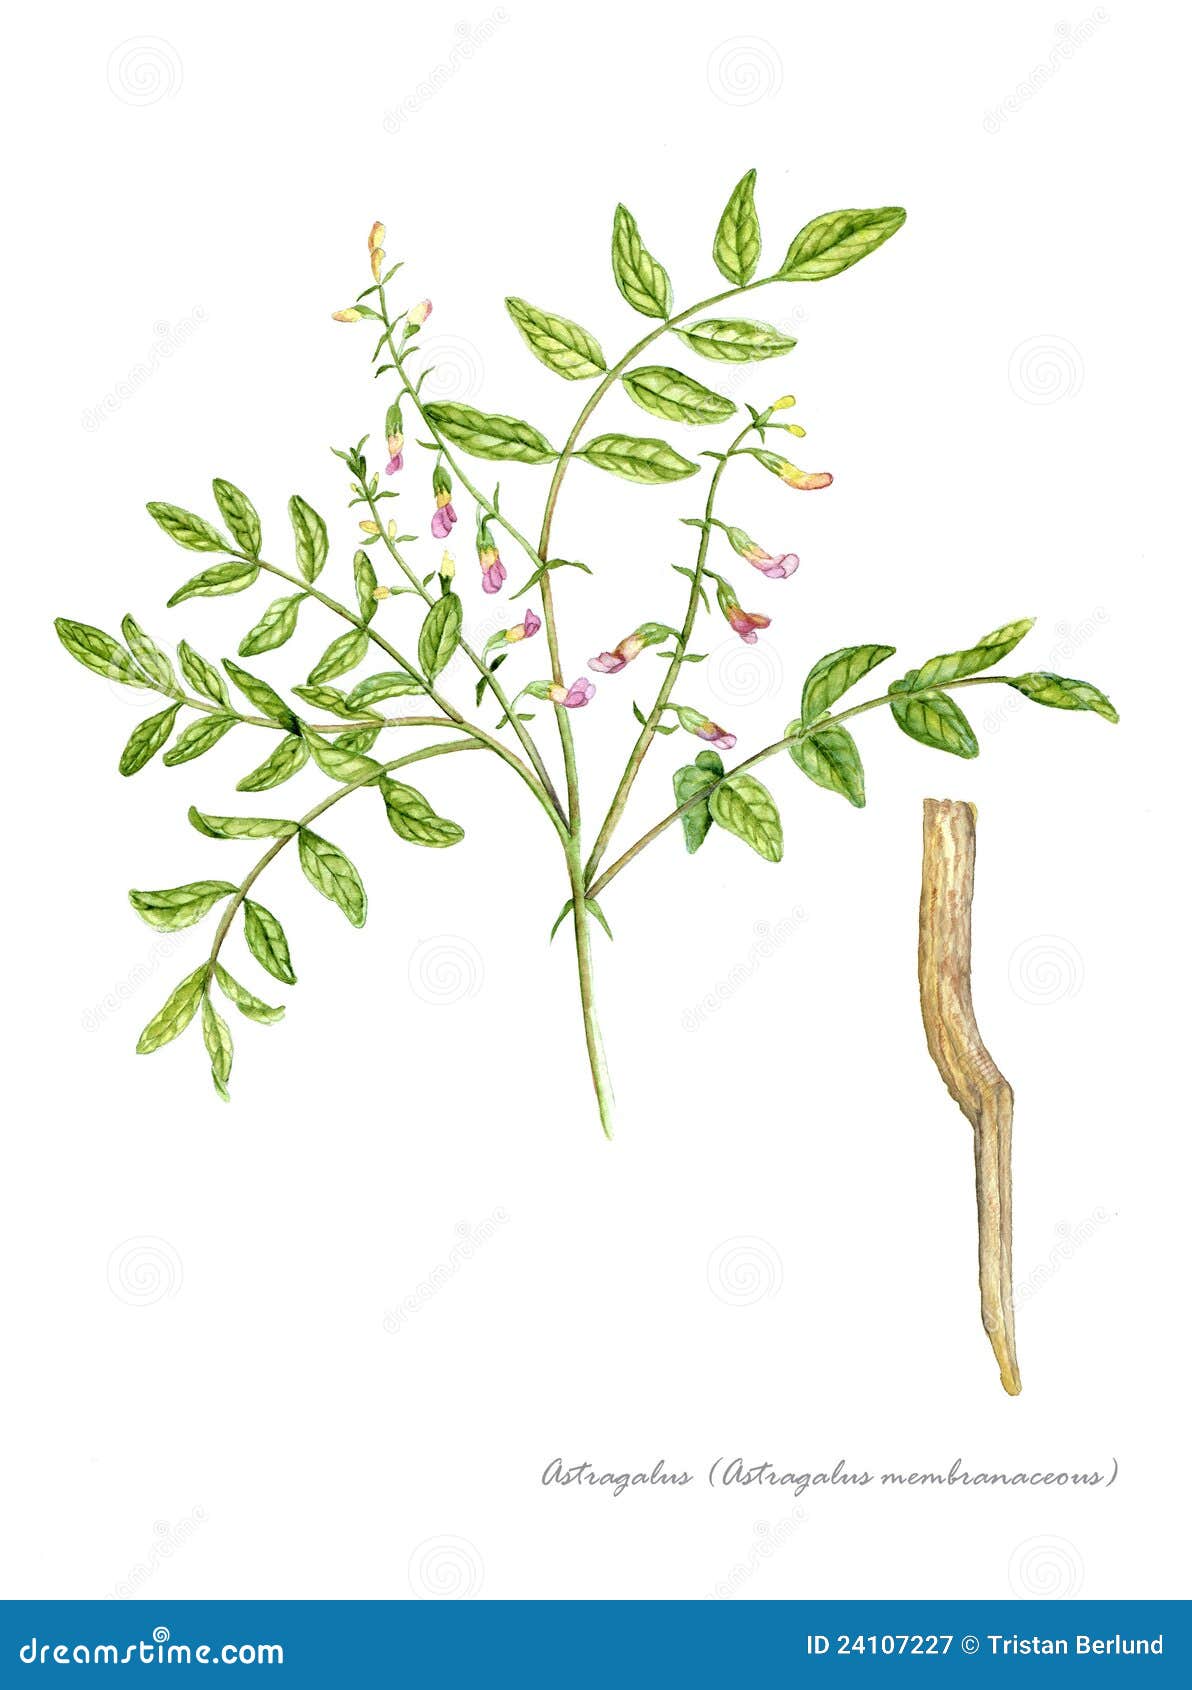 Astragalus yağı tentürü. Astragalus tıbbi özellikleri ve kontrendikasyonları. yaşlılar için